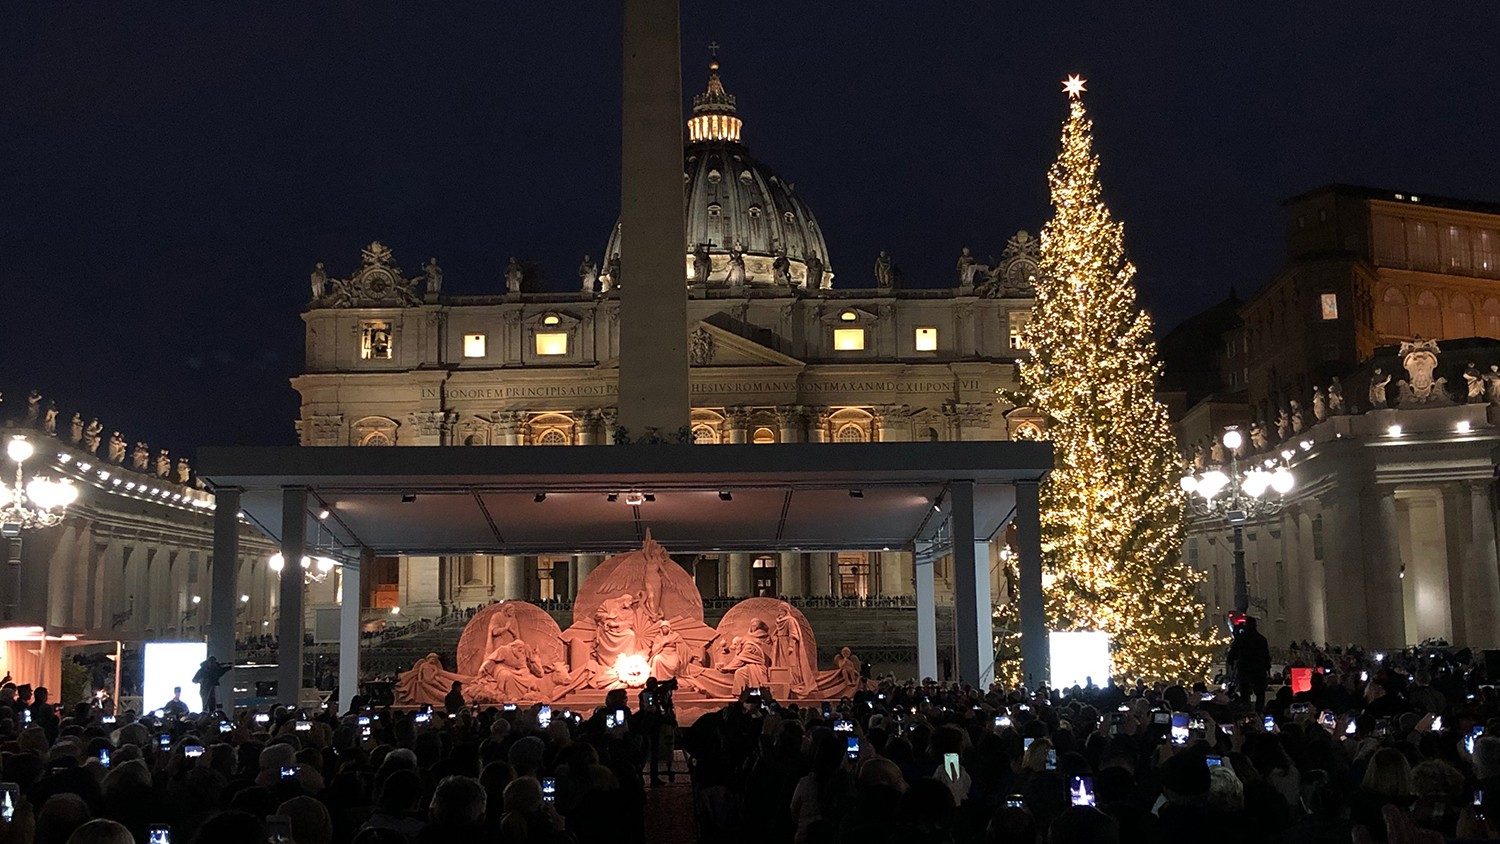 Albero Di Natale In Legno Con Presepe.Piazza San Pietro Albero E Presepe In Legno Dalle Zone Colpite Dai Nubifragi Vatican News